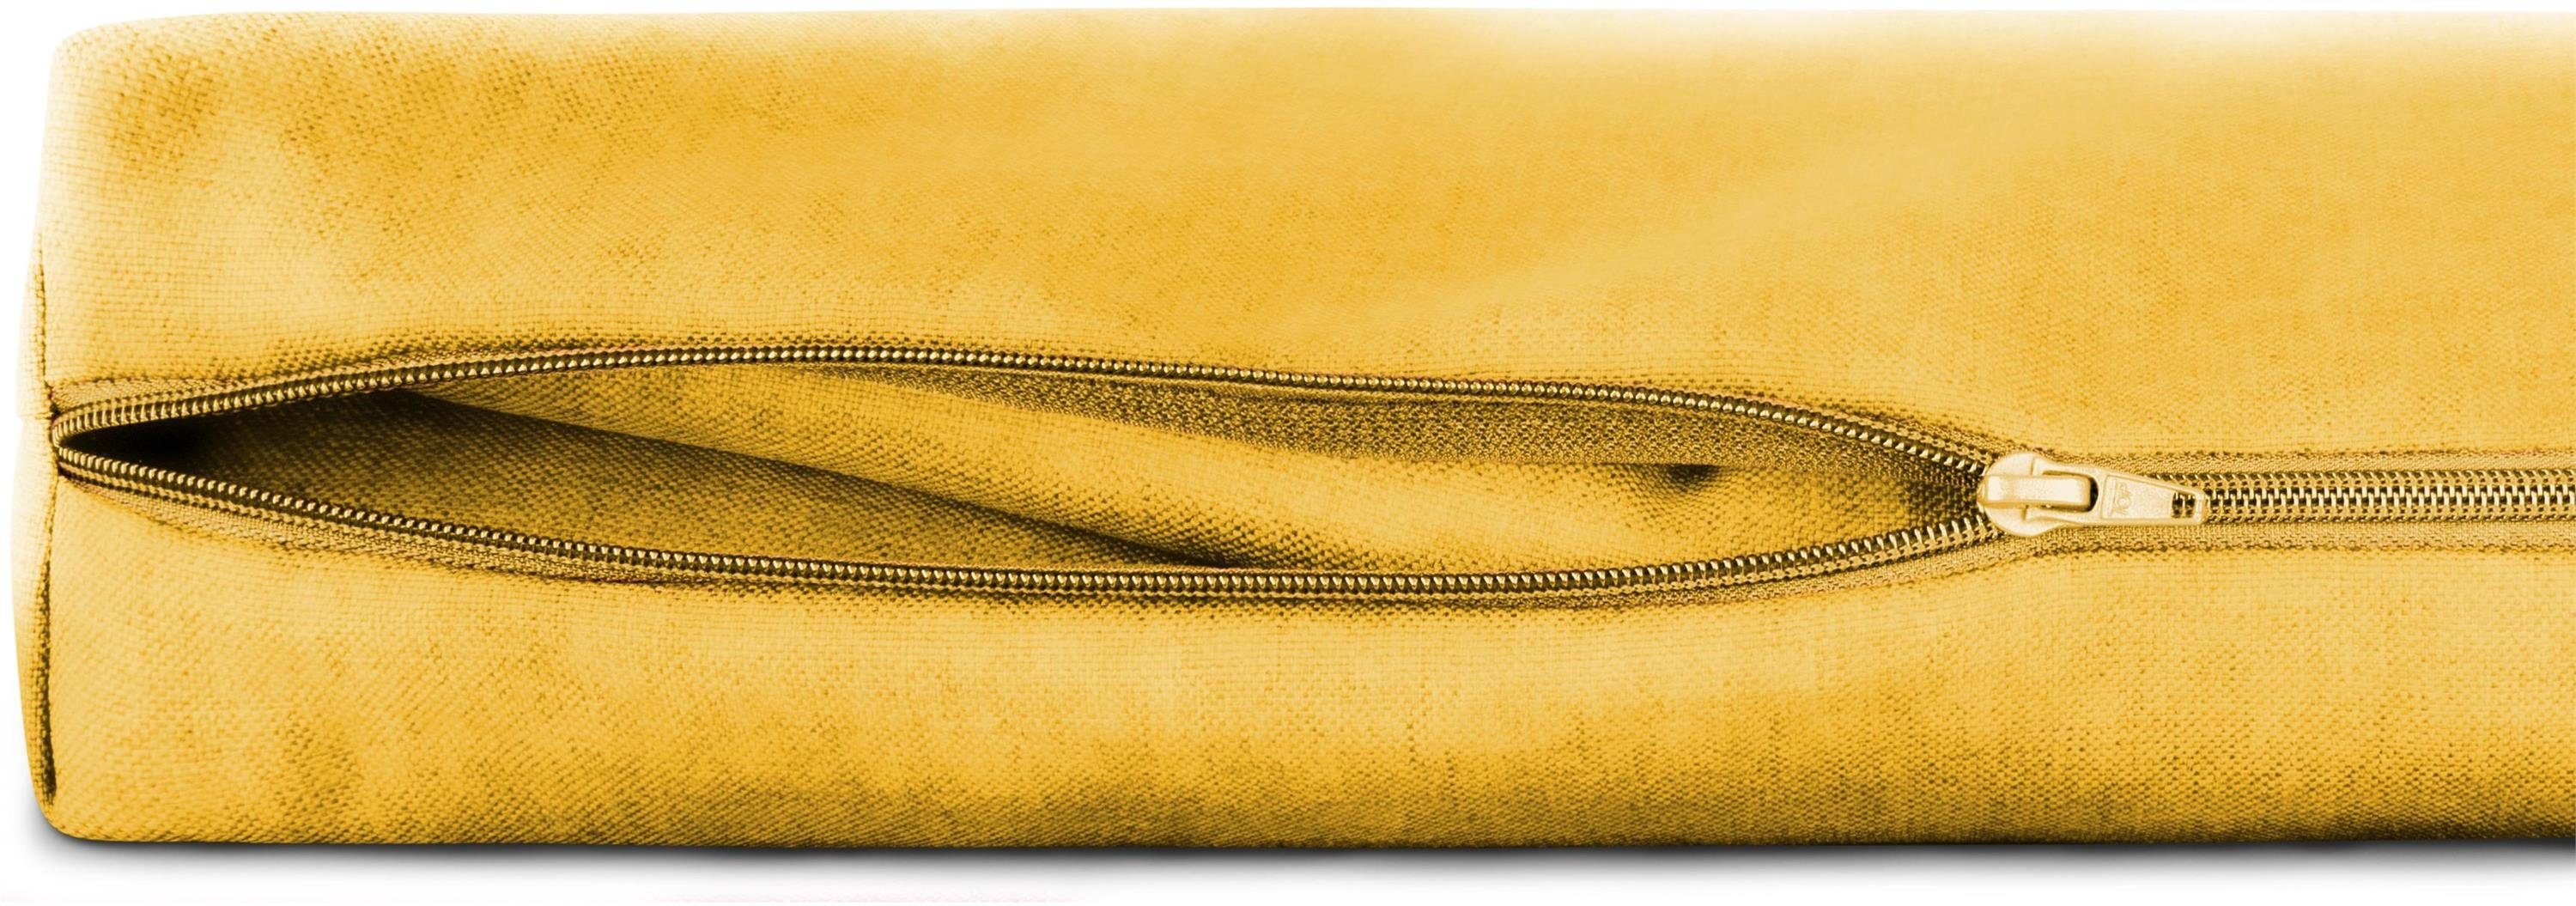 Marsala, Palettenkissen Gelb für Bezüge 2-teilig Palettenkissenbezüge Aspero, 2-teilige Wasserdichte Kissenbezug